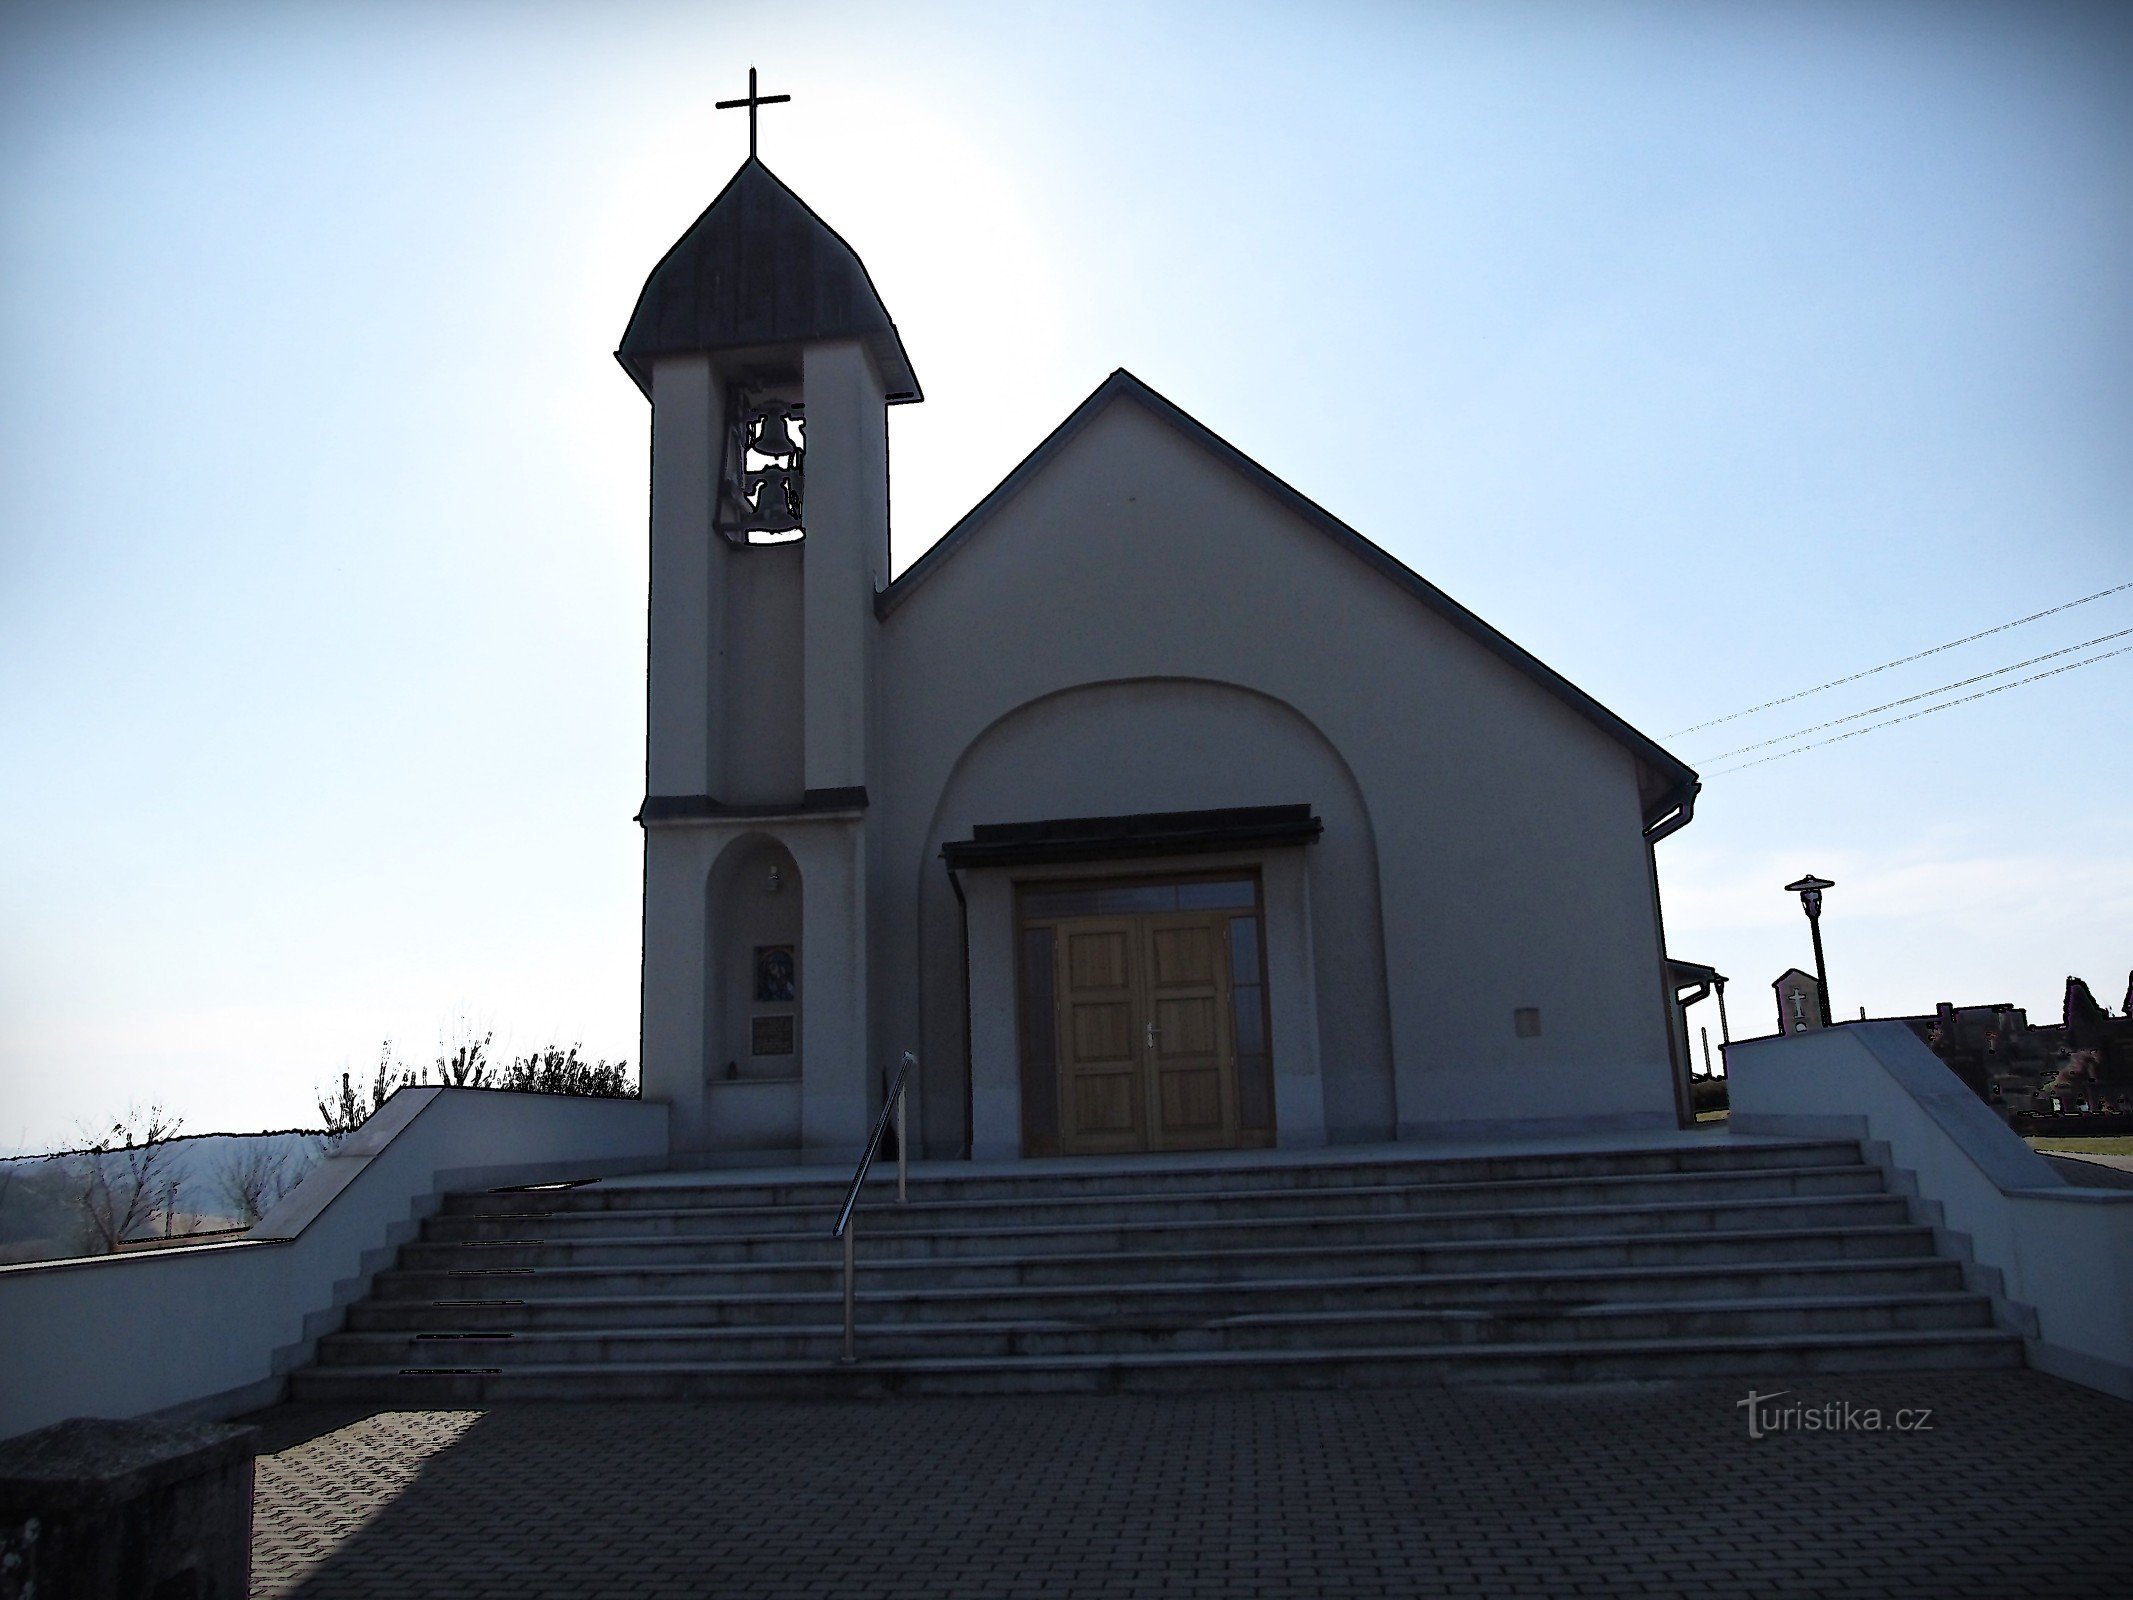 Drnovice - チェコ教会の聖アグネス